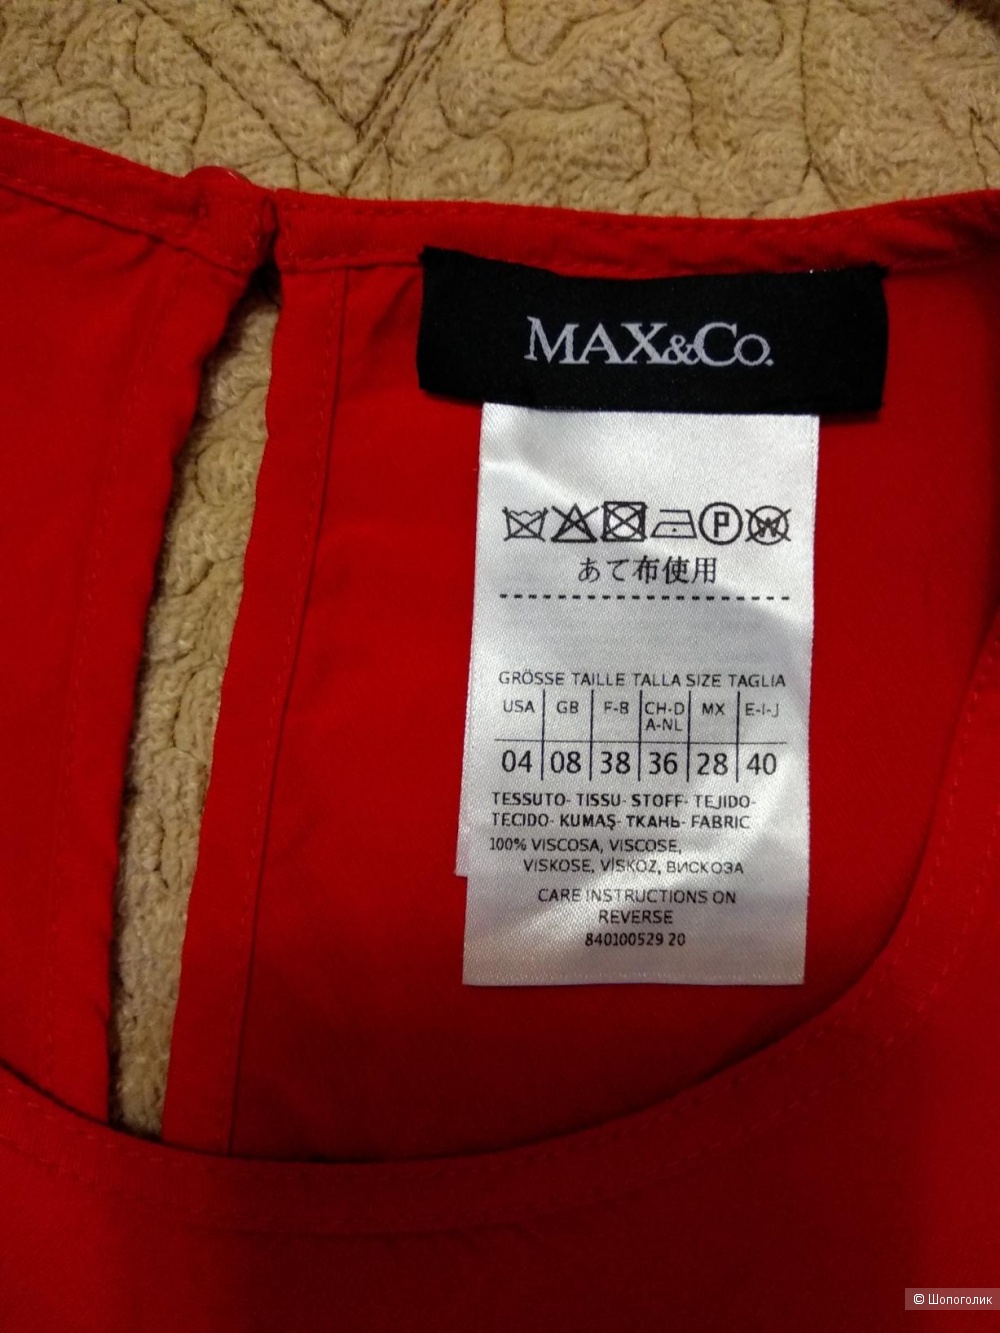 Блузка Max&Co (Max Mara) размер 44